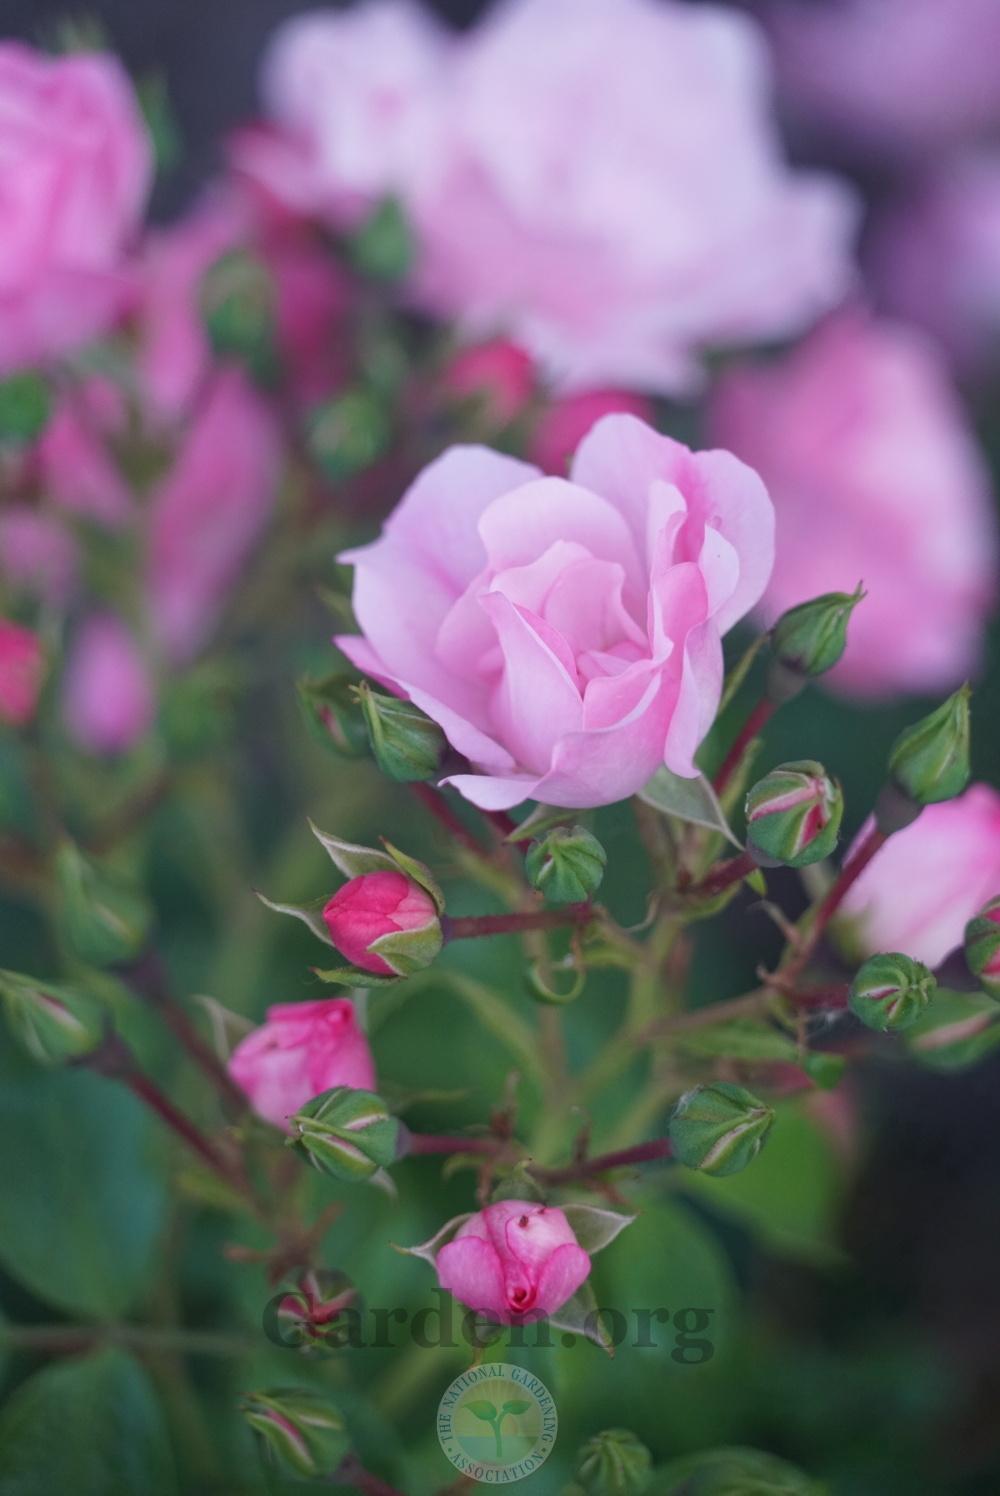 Photo of Rose (Rosa 'Flower Carpet Apple Blossom') uploaded by jnd1126